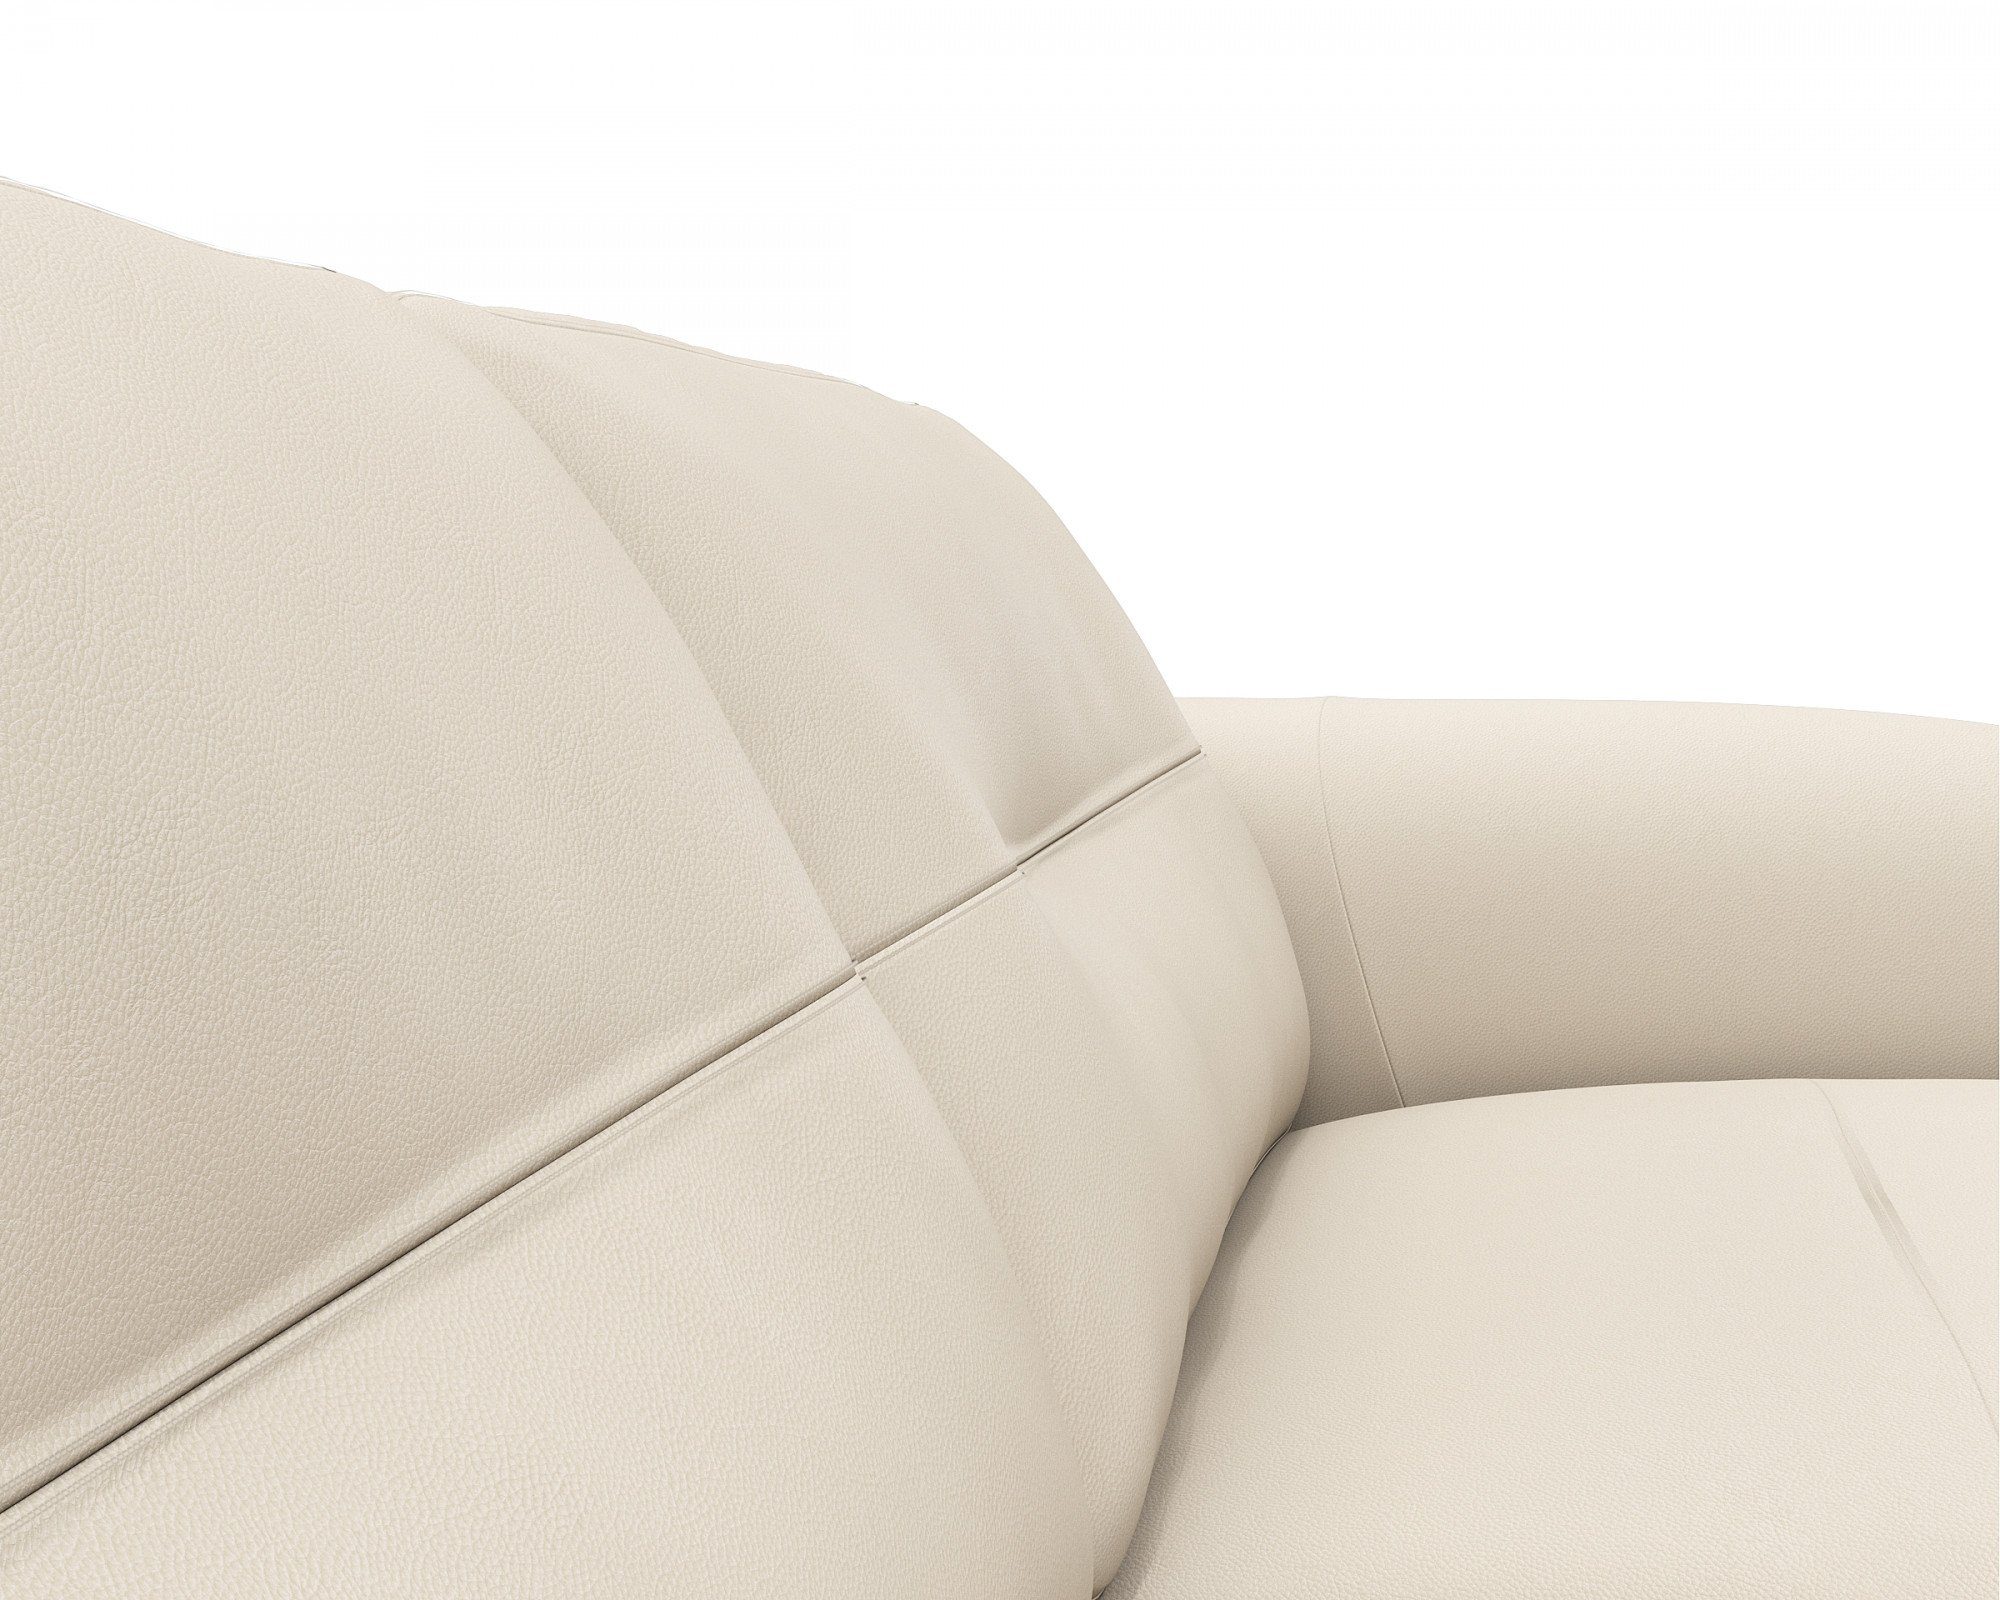 FLEXLUX 3-Sitzer Glow, Federkern, schwarz & Fuß Kaltschaum Walnuss, Premium-Sitz: Arml